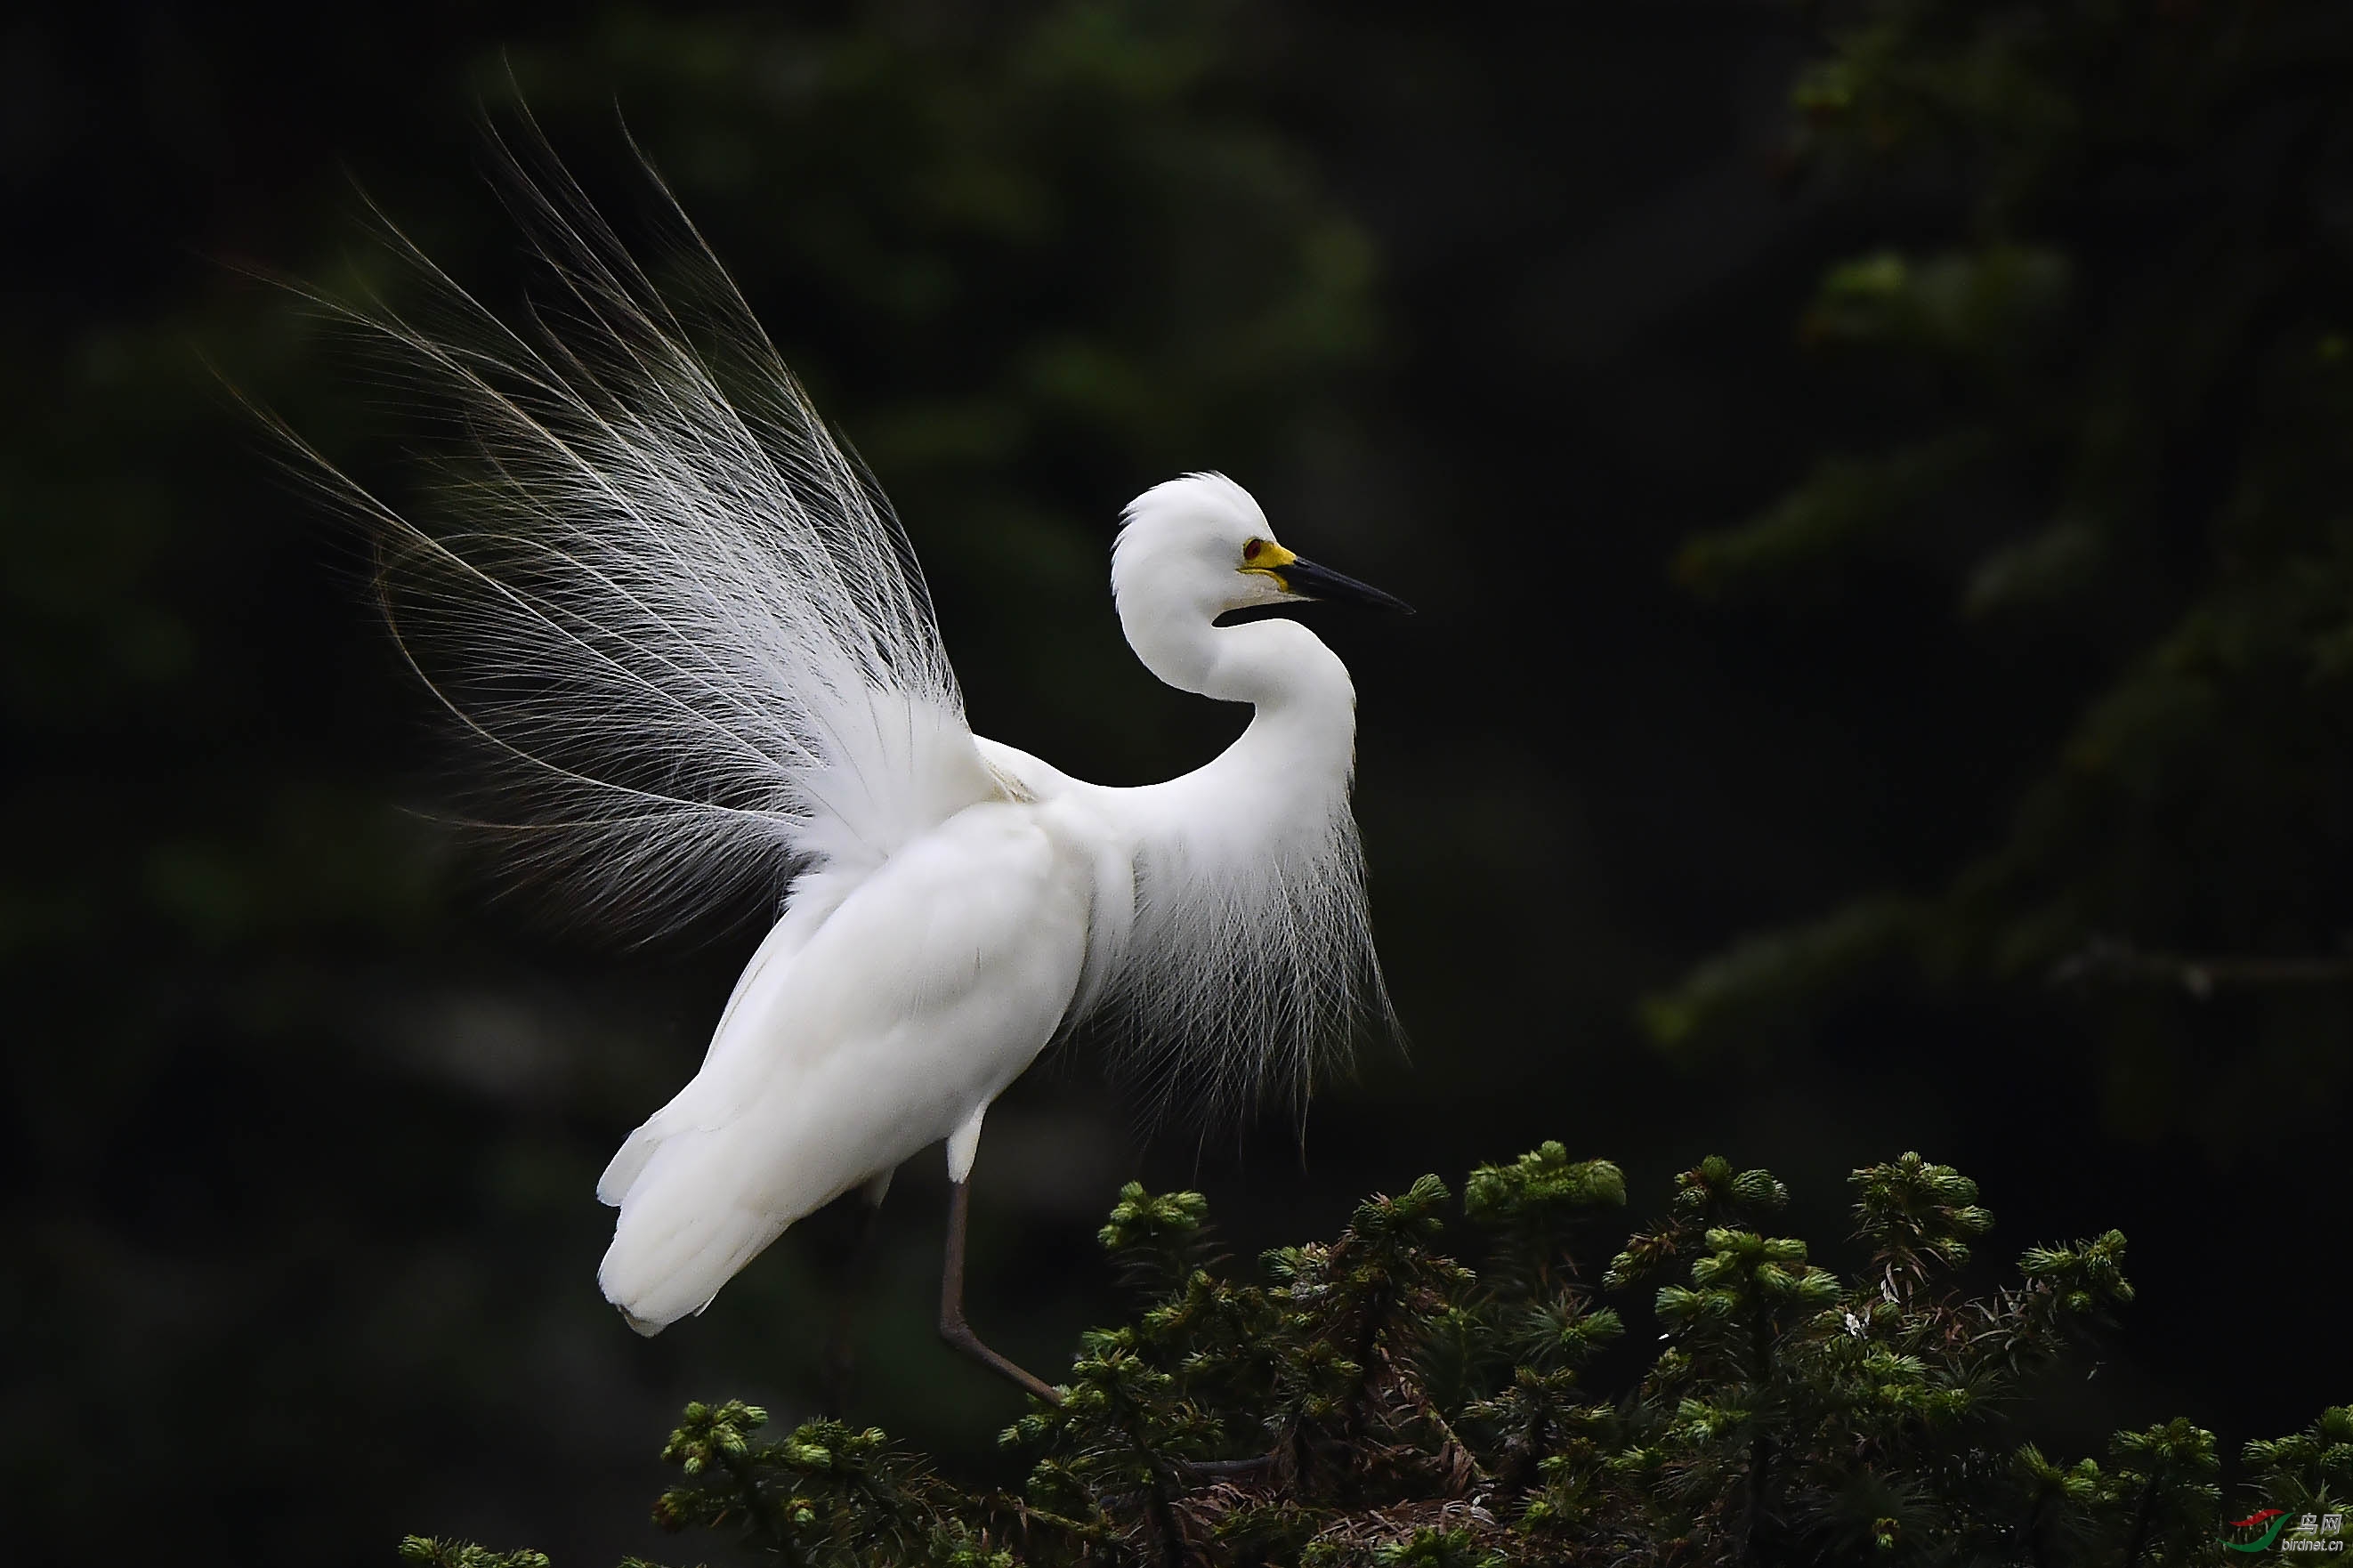 白色精灵—庆祝鸟网成立十周年!鸟友们周末快乐!